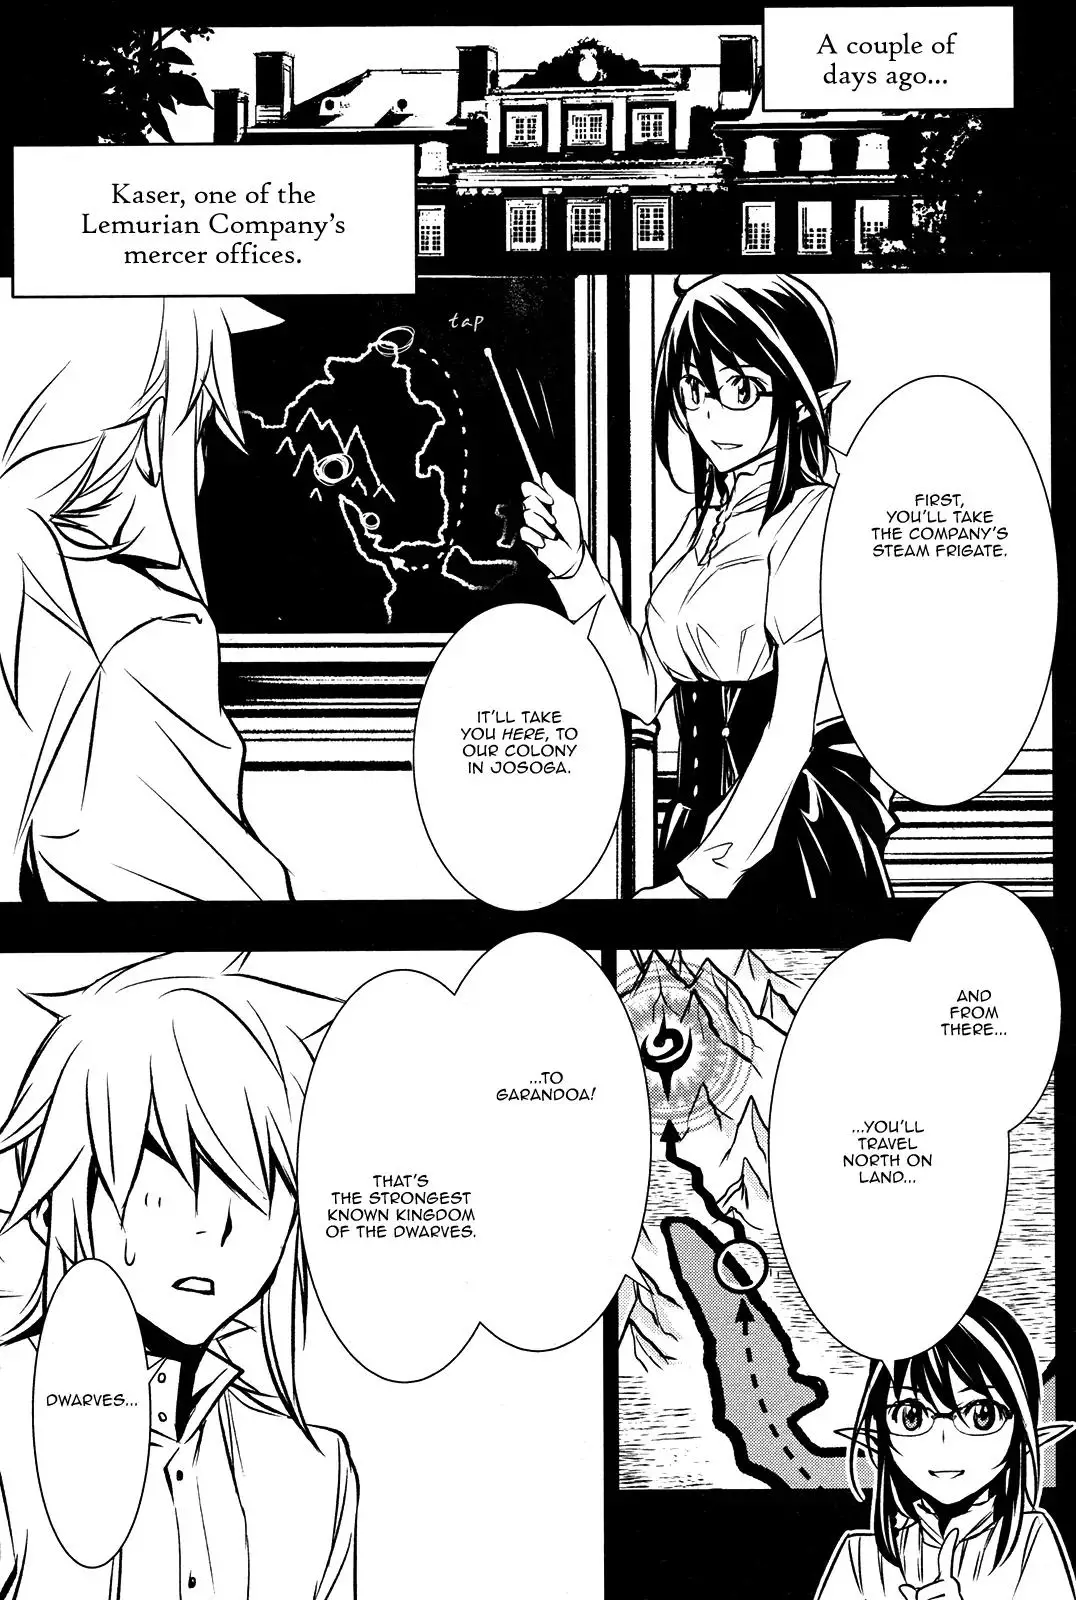 Shinju no Nectar - 9 page 3